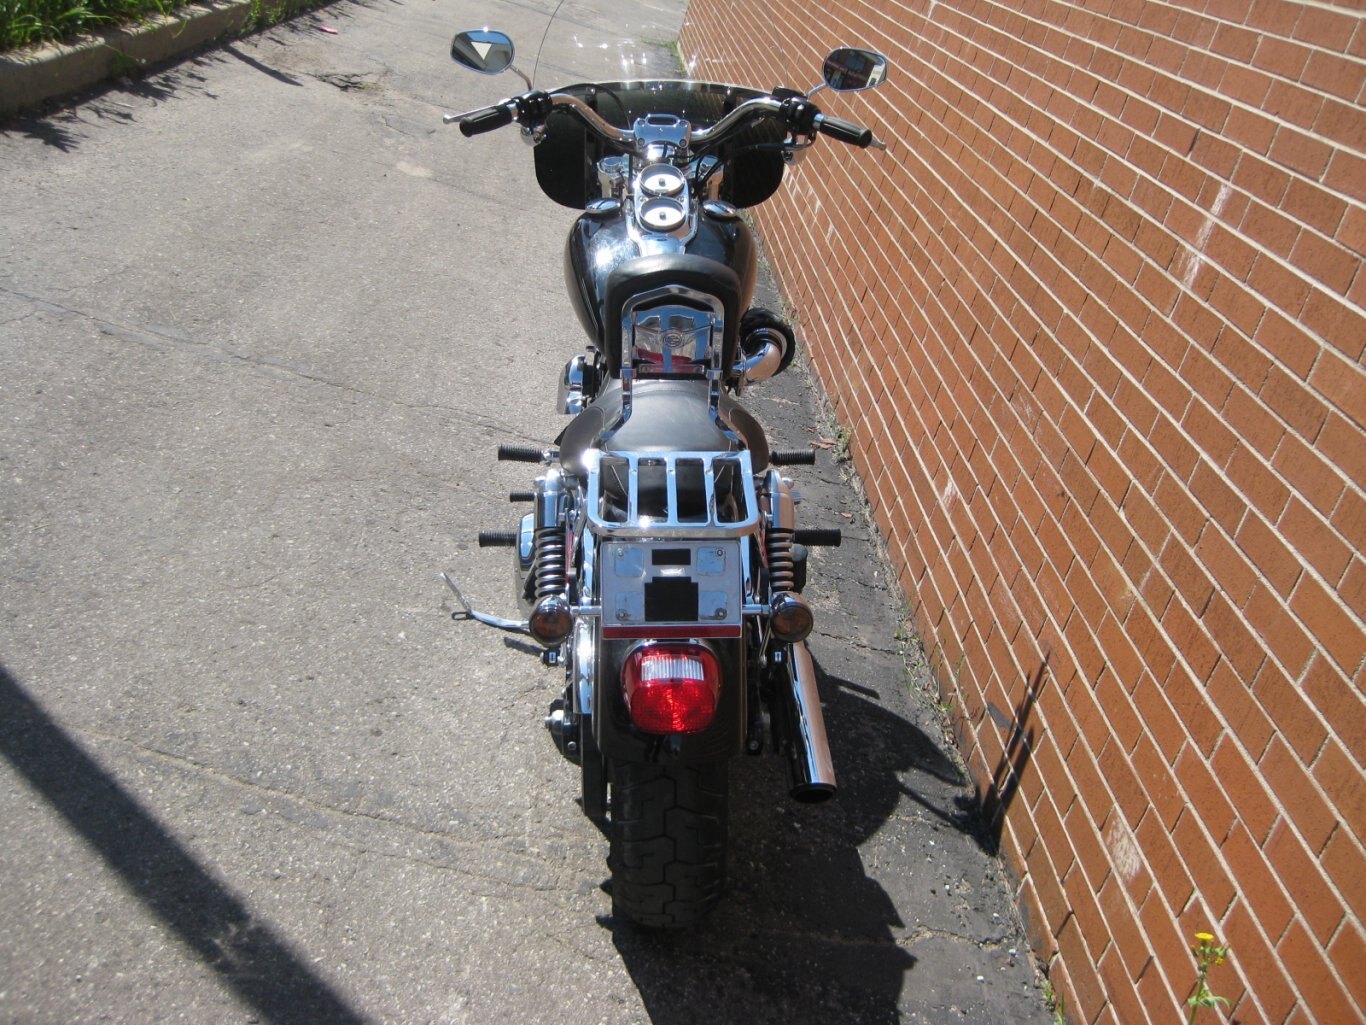 2009 Harley Davidson Dyna Low Rider